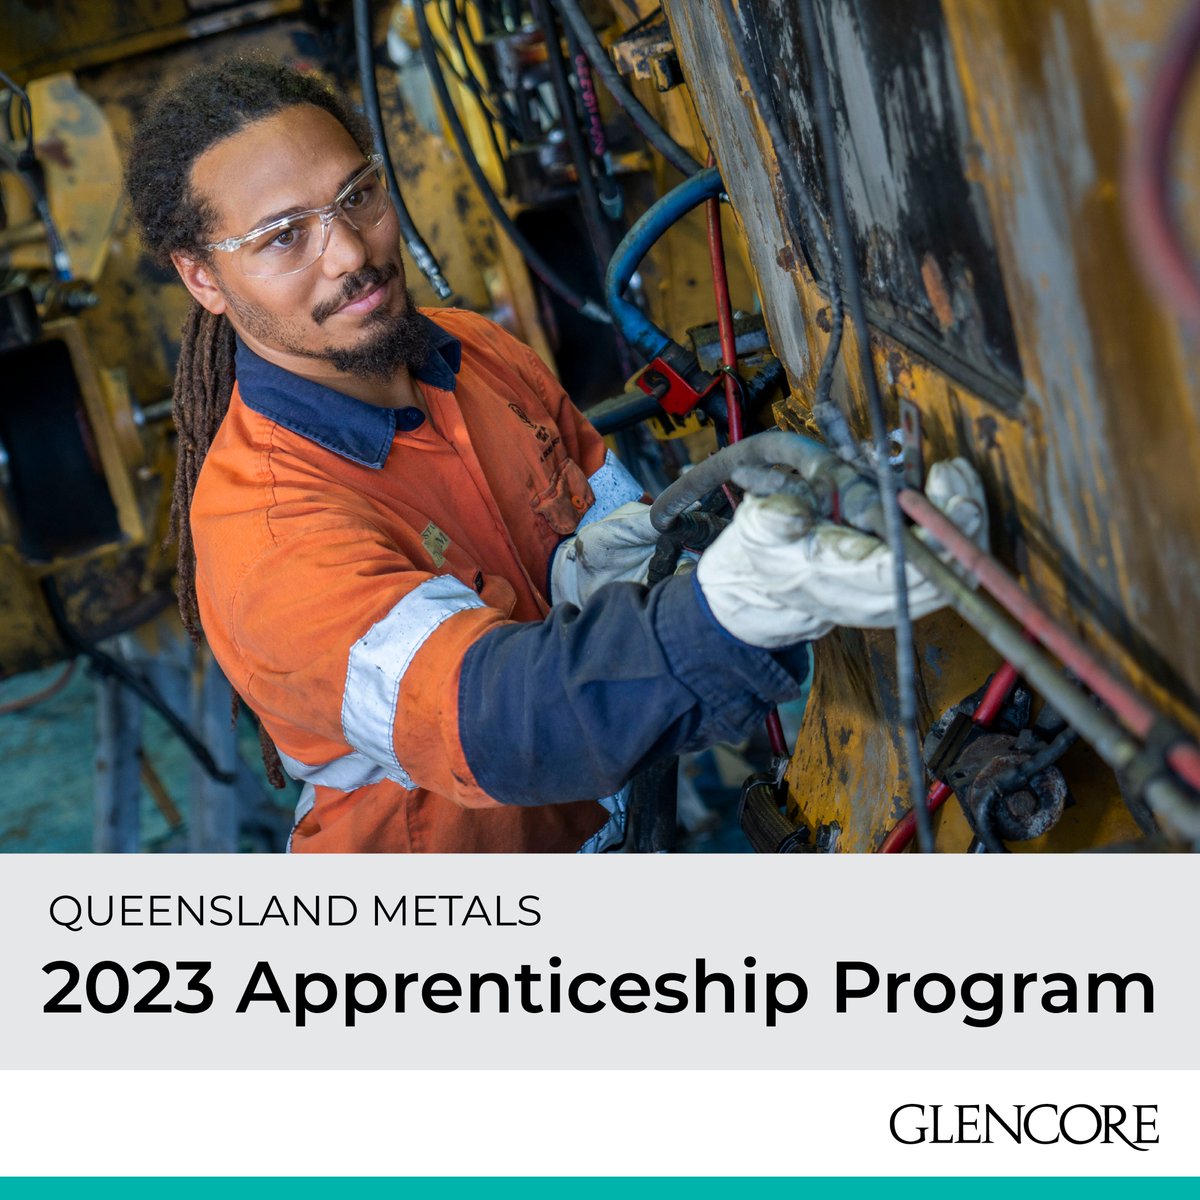 High altitude partners @GlencoreAus Queensland Metals 2023 Apprenticeship Program is open now! 